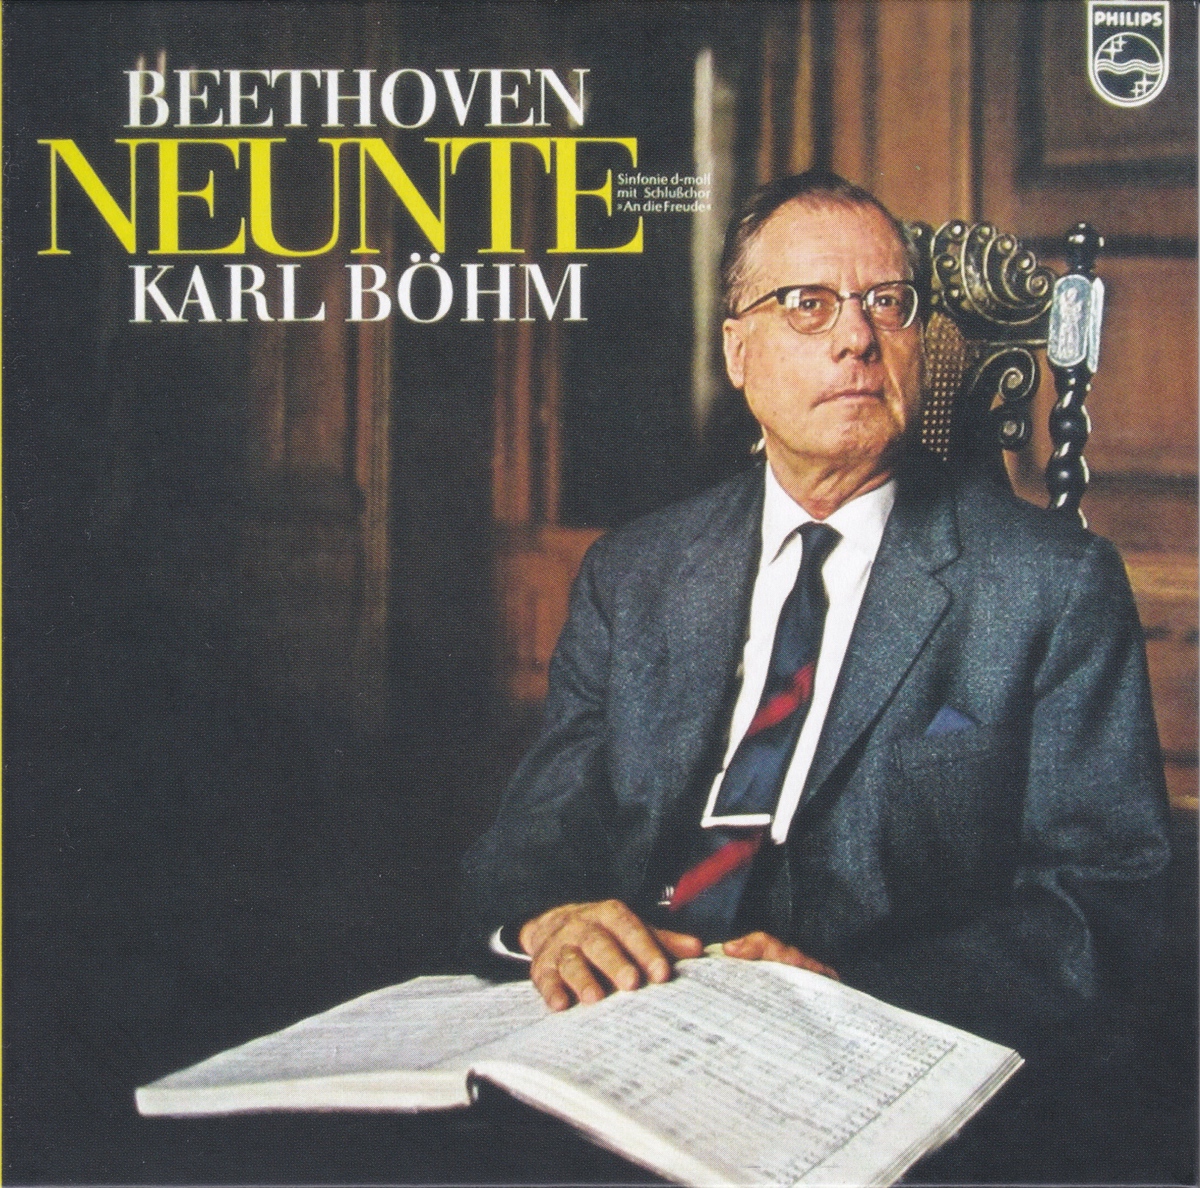 カール・ベーム壮年期の熱気ある第九 ウィーン響とのベートーヴェン交響曲第9番「合唱付き」(1957年)